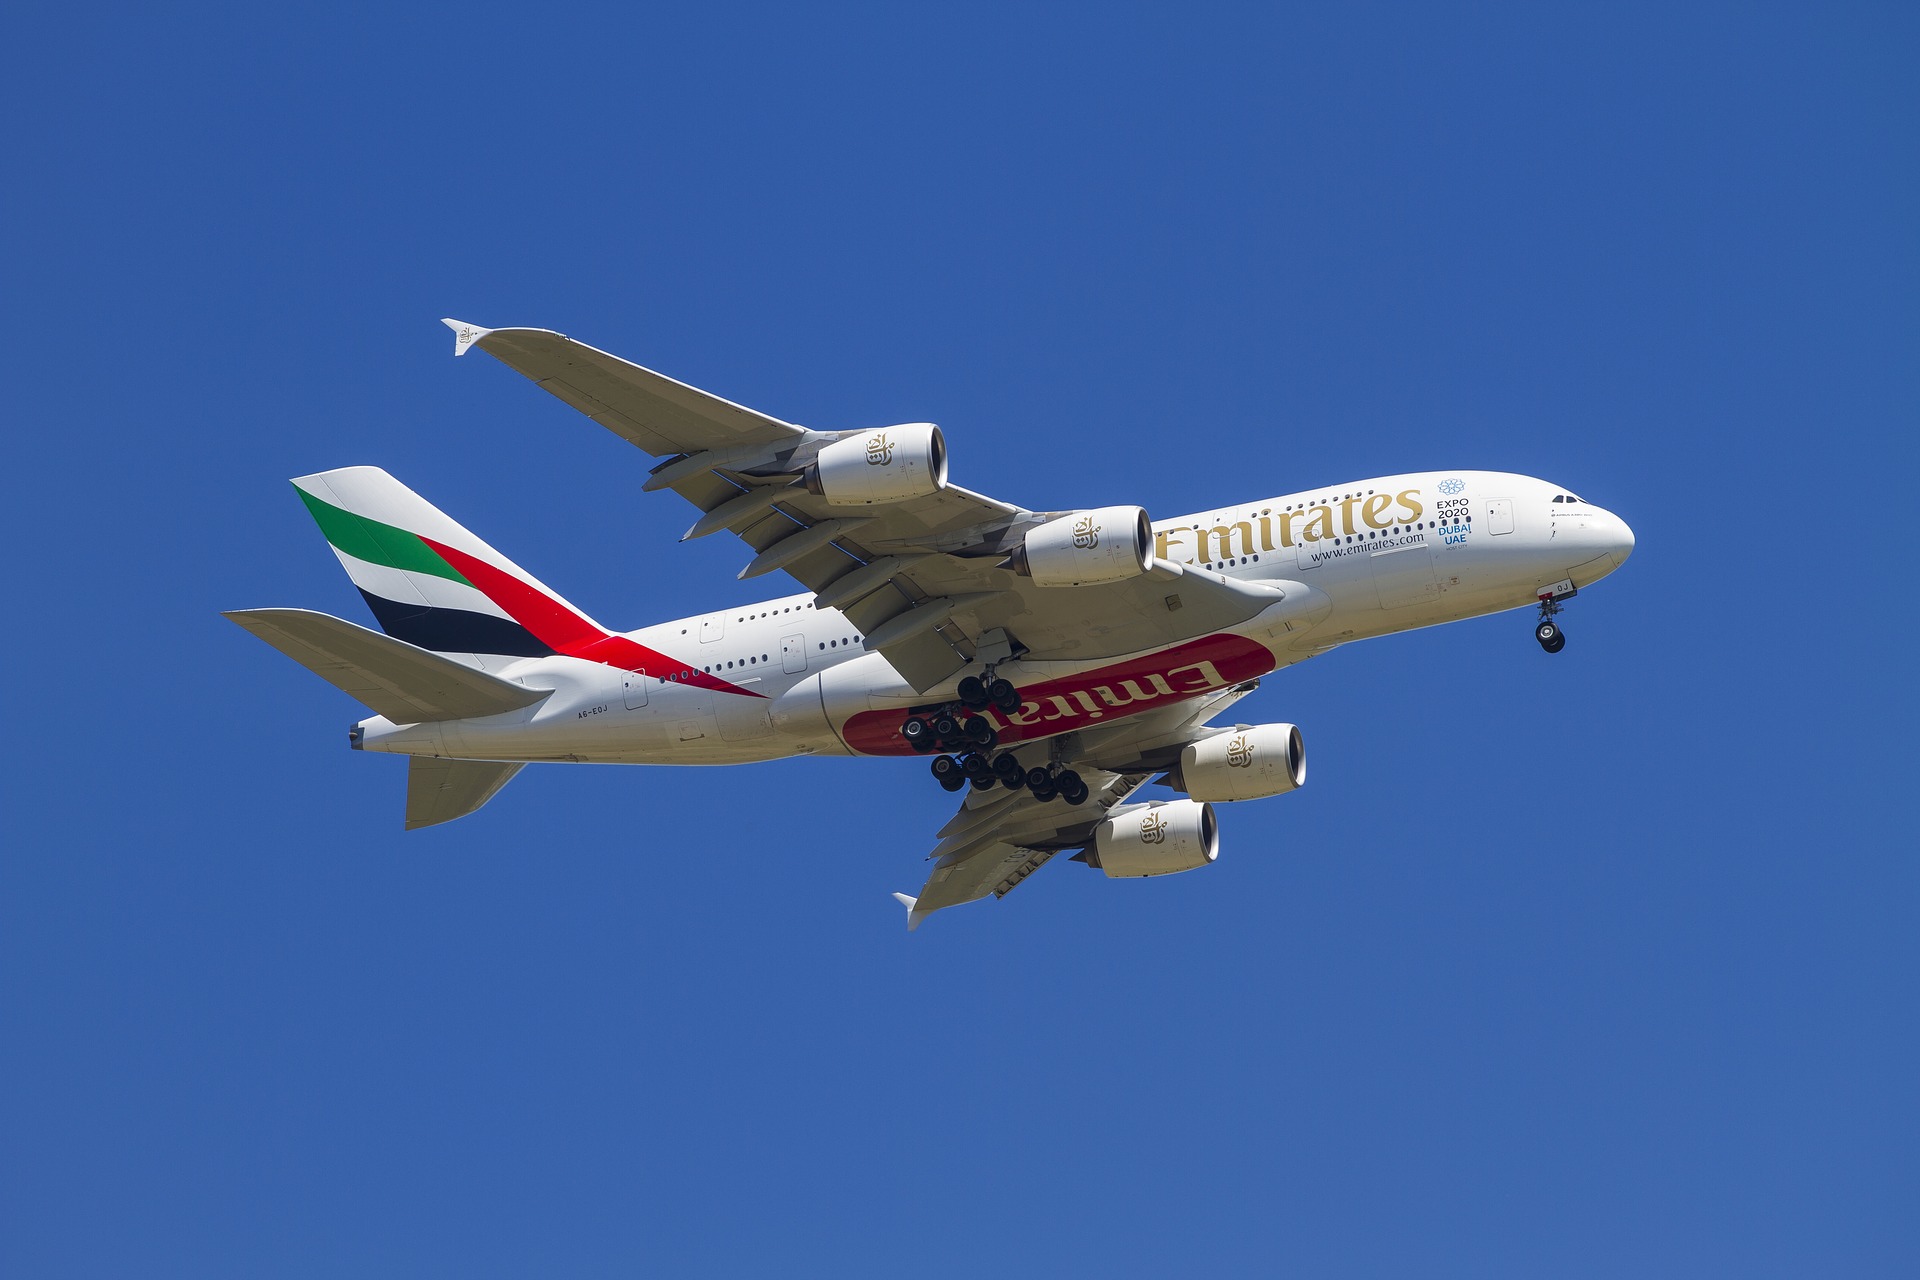 Goedkoop vliegticket met Emirates naar Dubai